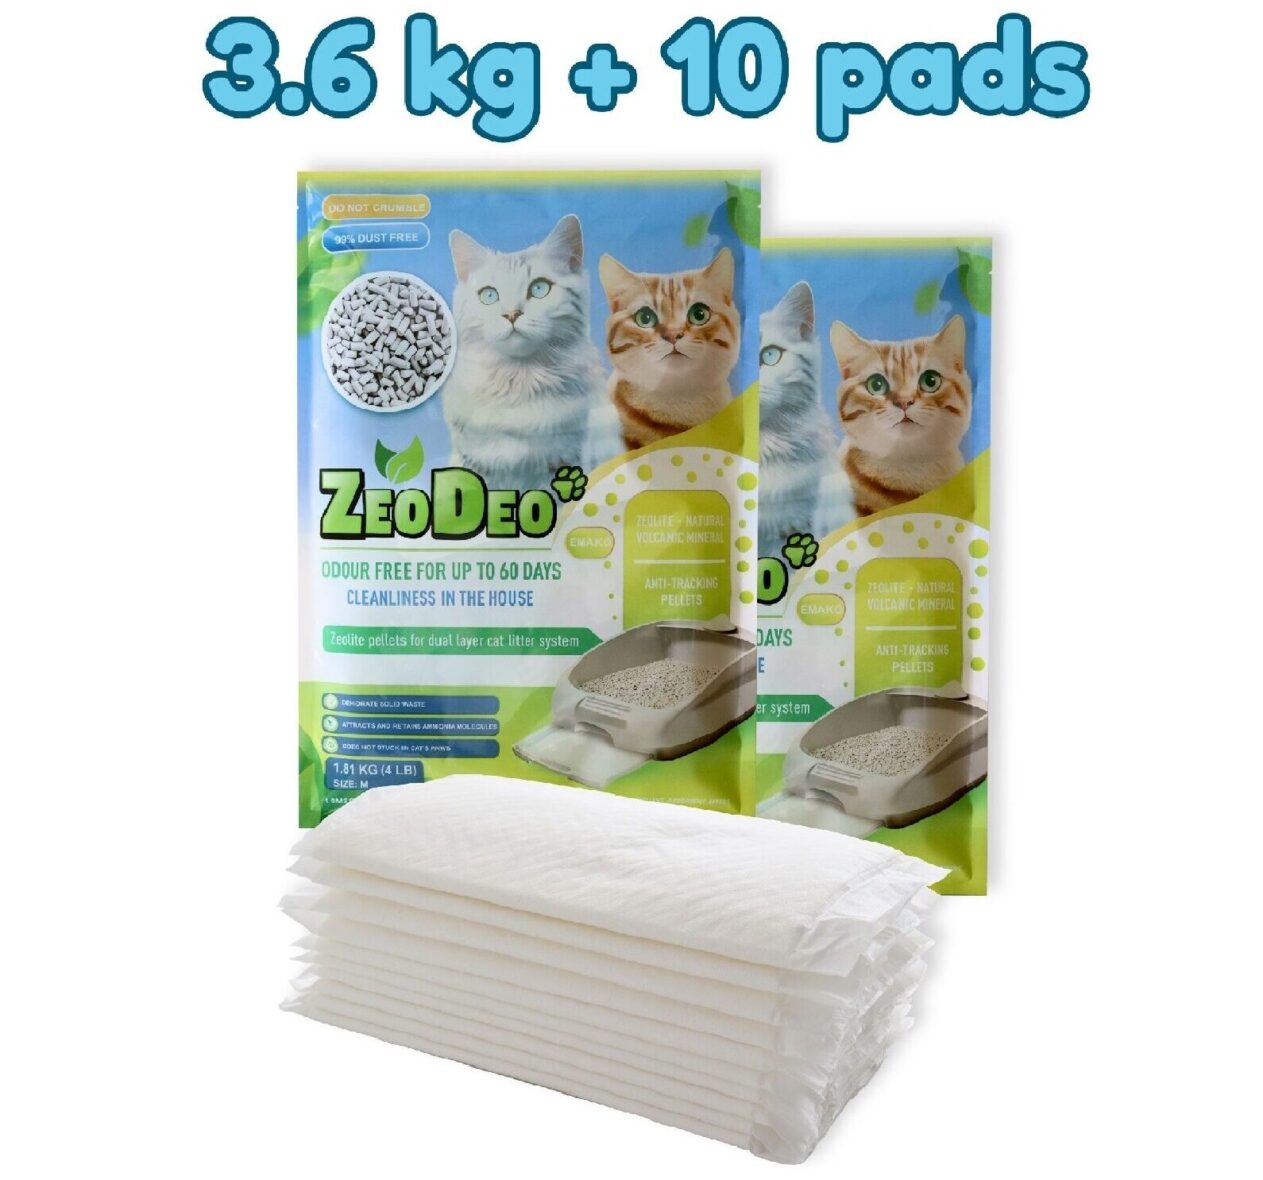 ZeoDeo – dabīgā ceolīta granulas kaķu pakaišu kastēm 3.6 kg +10 pads